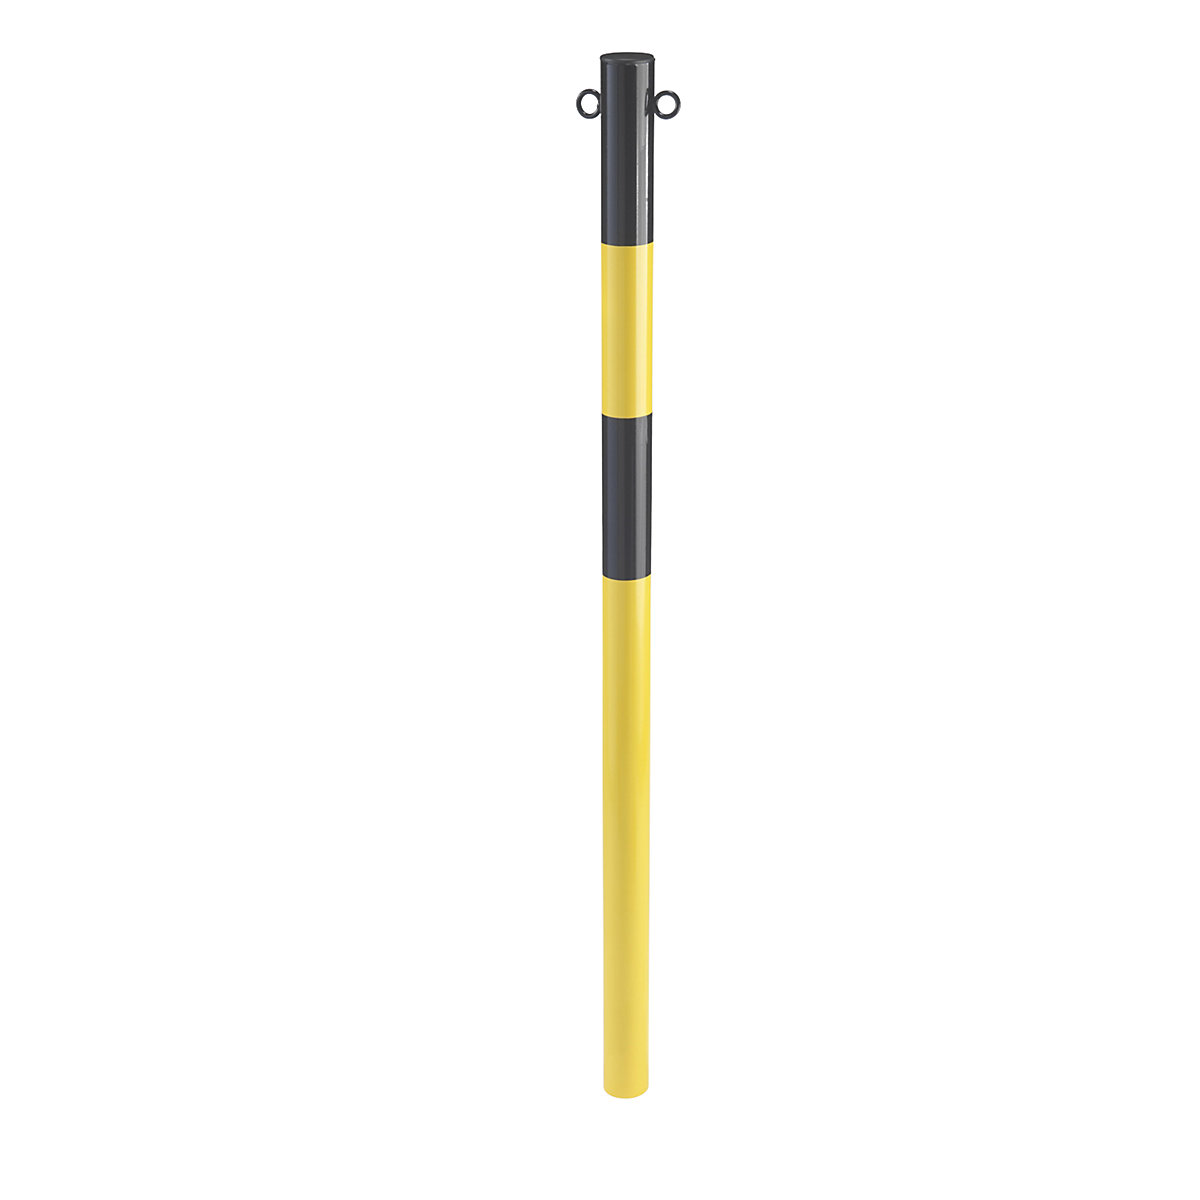 Paletto di sbarramento in tubo d'acciaio, da annegare nel cemento, Ø 60 mm, giallo / nero, zincatura e verniciatura-4